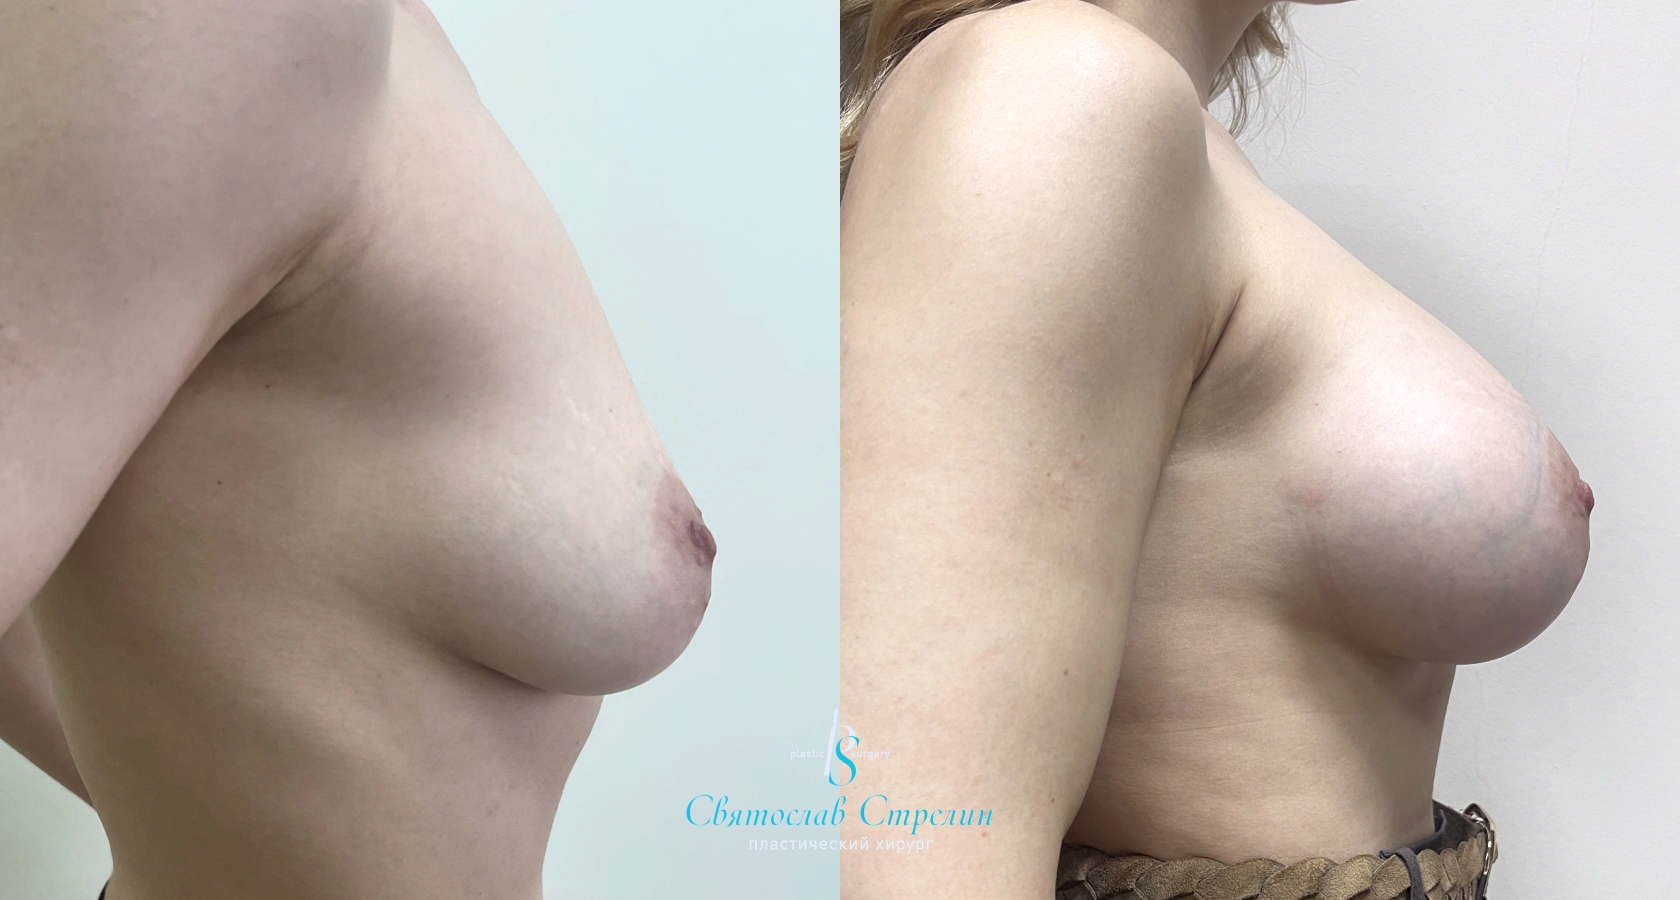 Увеличение груди, 6 месяцев после операции, импланты Себбин 425 мл, анатомические, большая высота, высокая проекция, доступ подмышечный